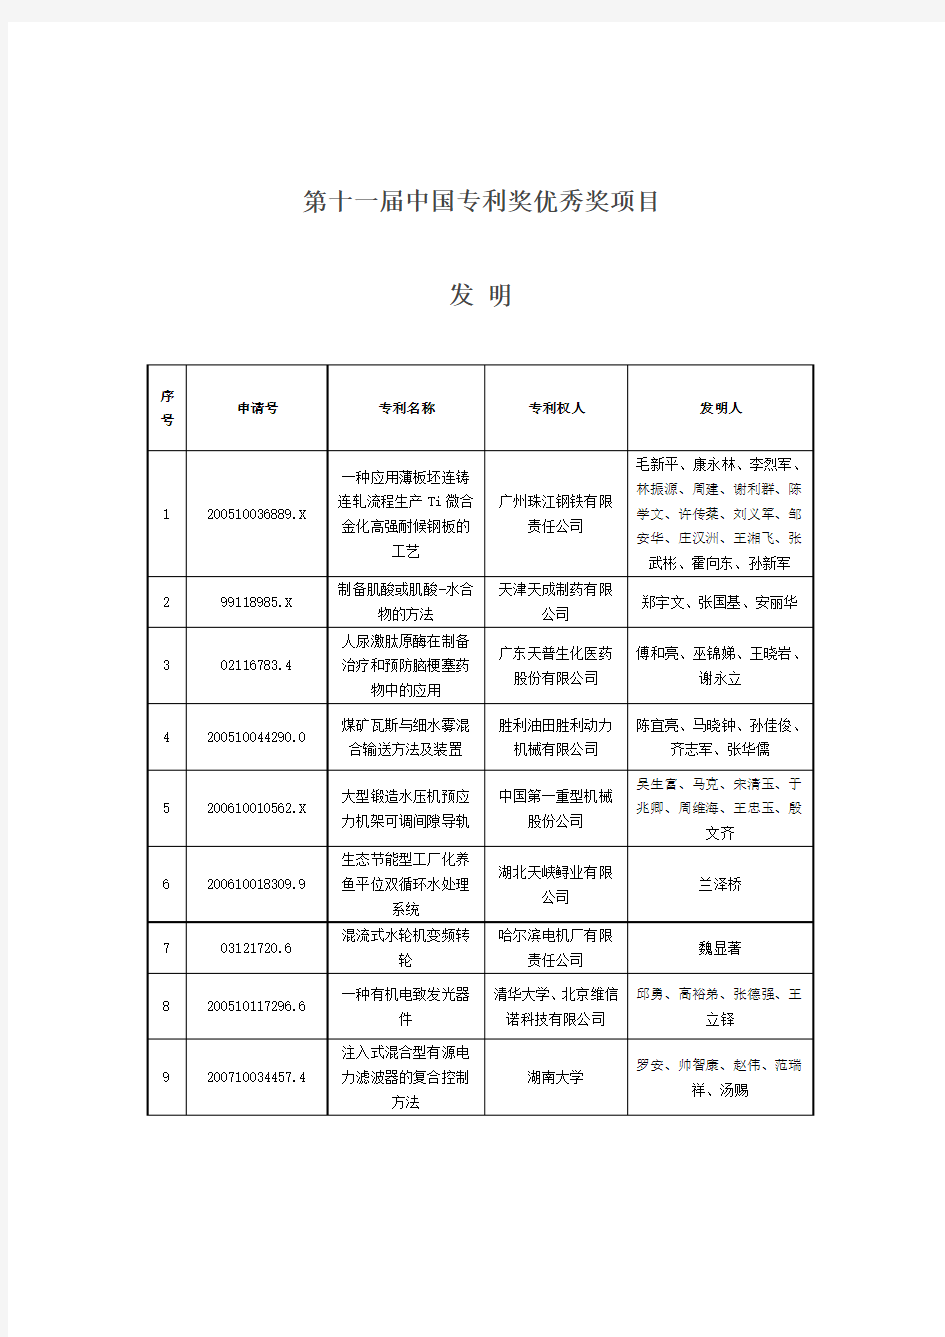 第十一届中国专利奖金奖项目